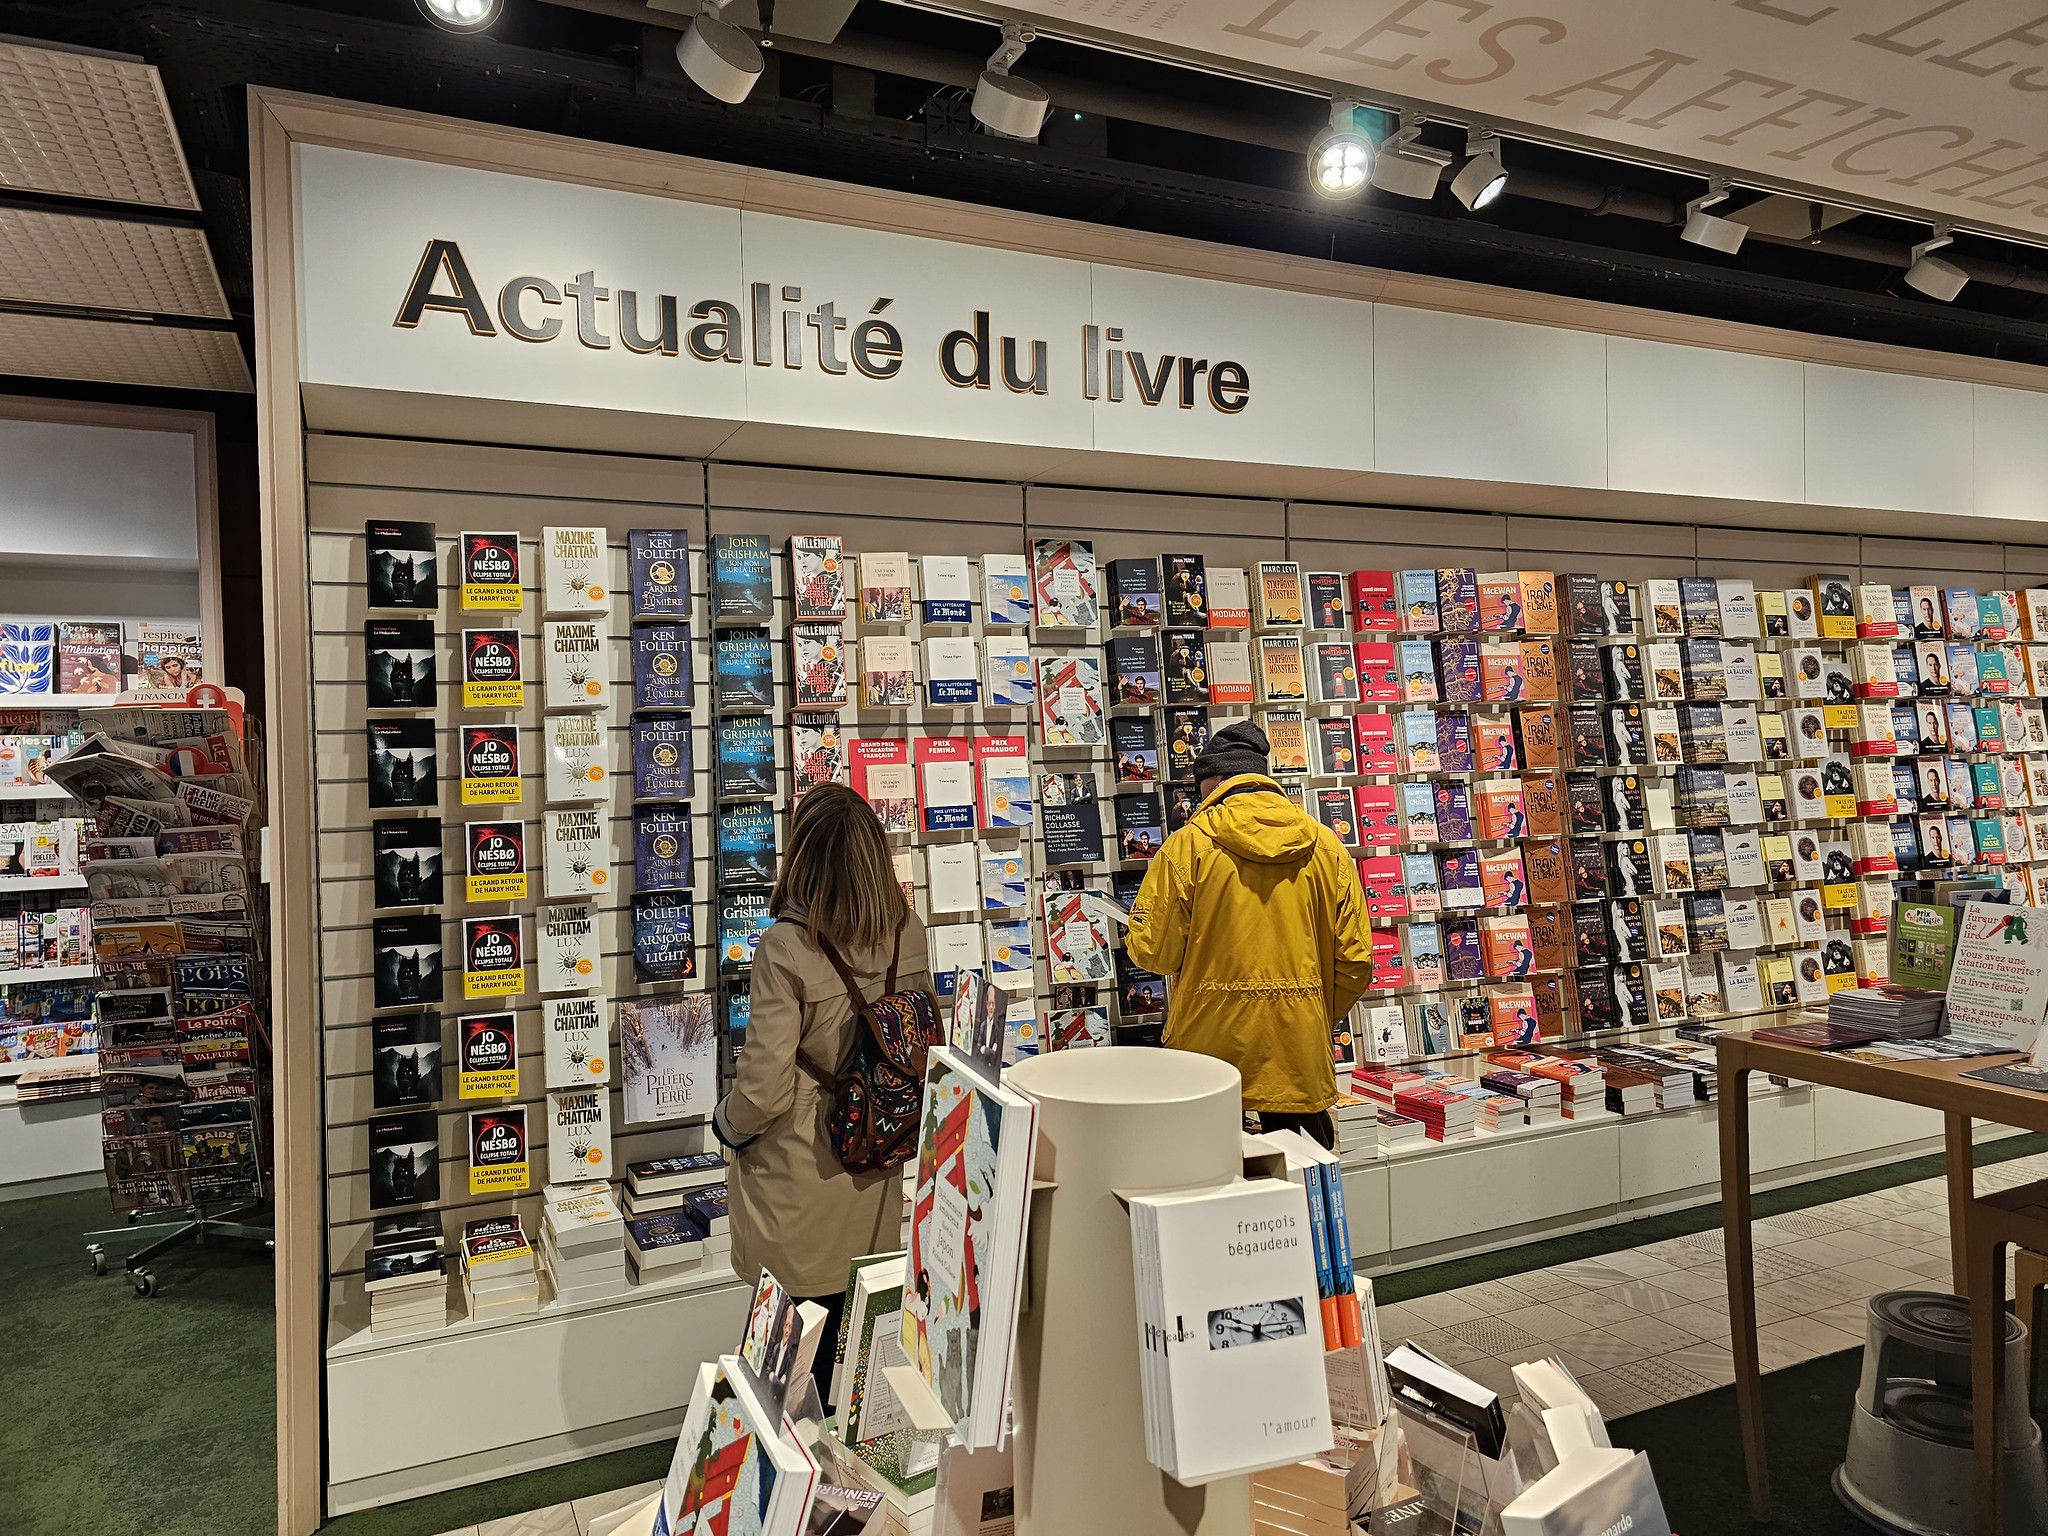 Les 10 livres les plus vendus et les auteurs favoris des Français